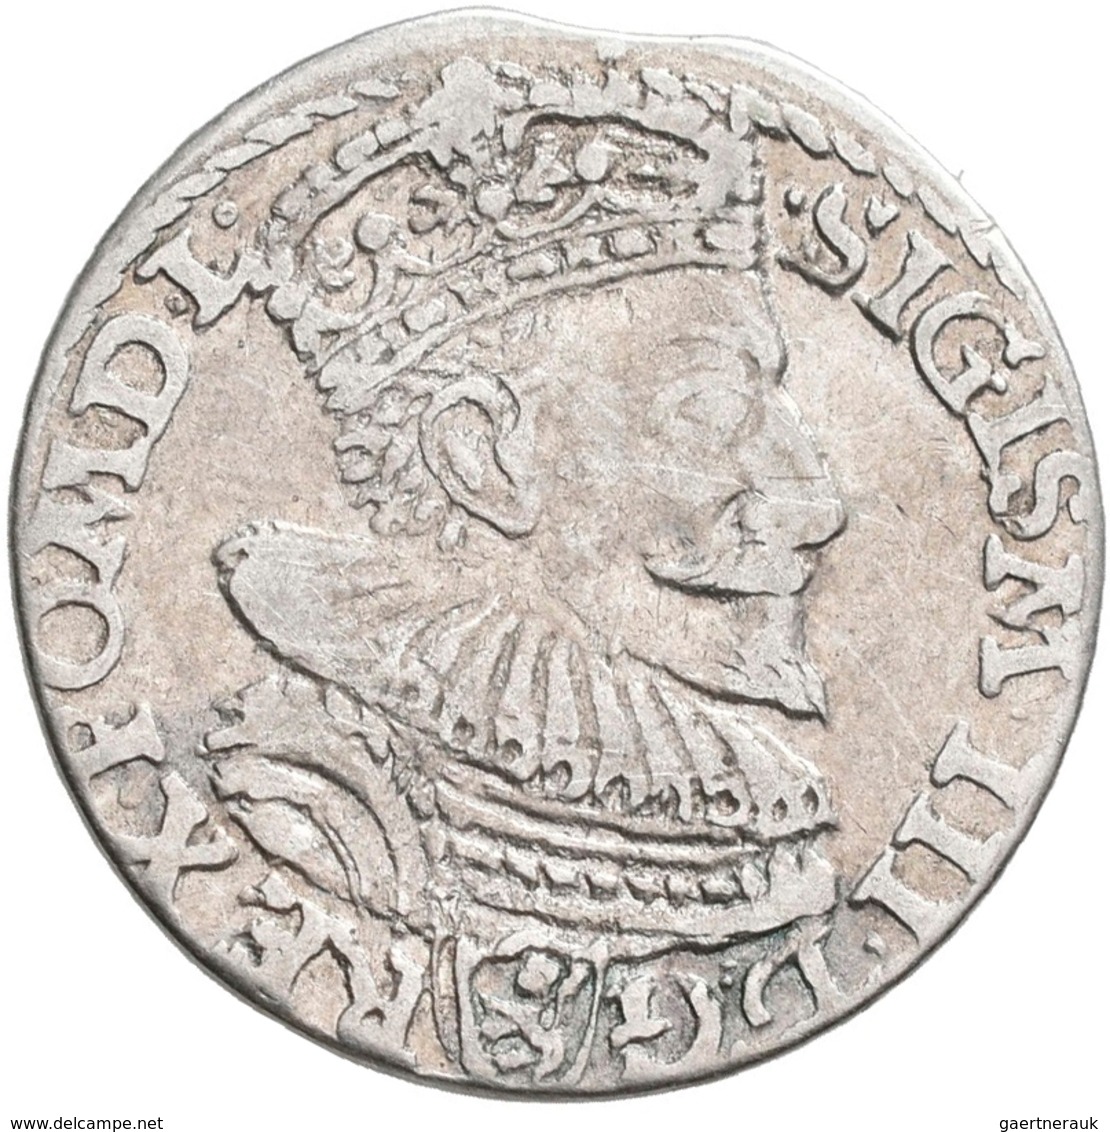 Polen: Sigismund III. (Zygmunt III. Waza) 1587-1632: Lot 6 Münzen: 3 Gröscher / Grosze (Trojak) um 1